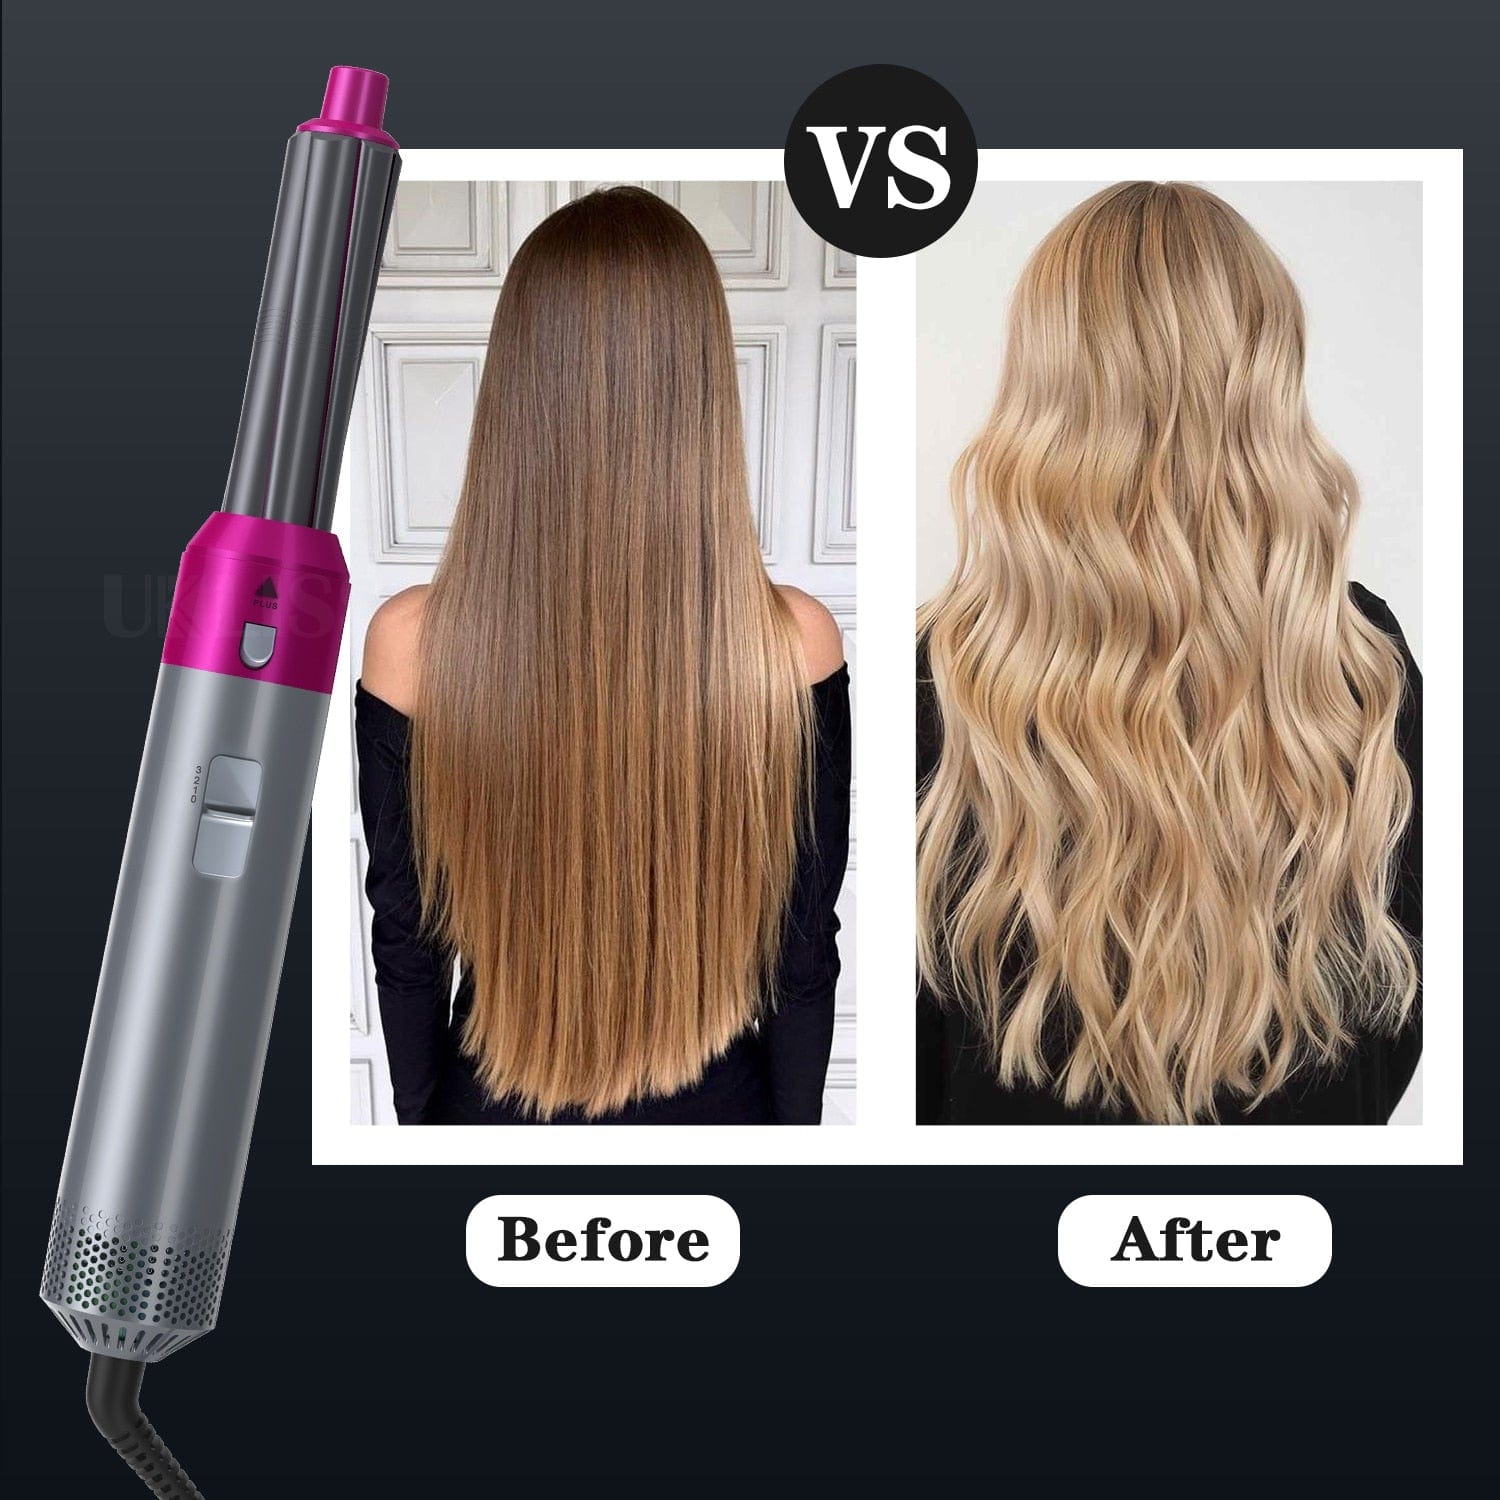 5In1 Hair Dryer Comb Hair Curling Straightening Hair